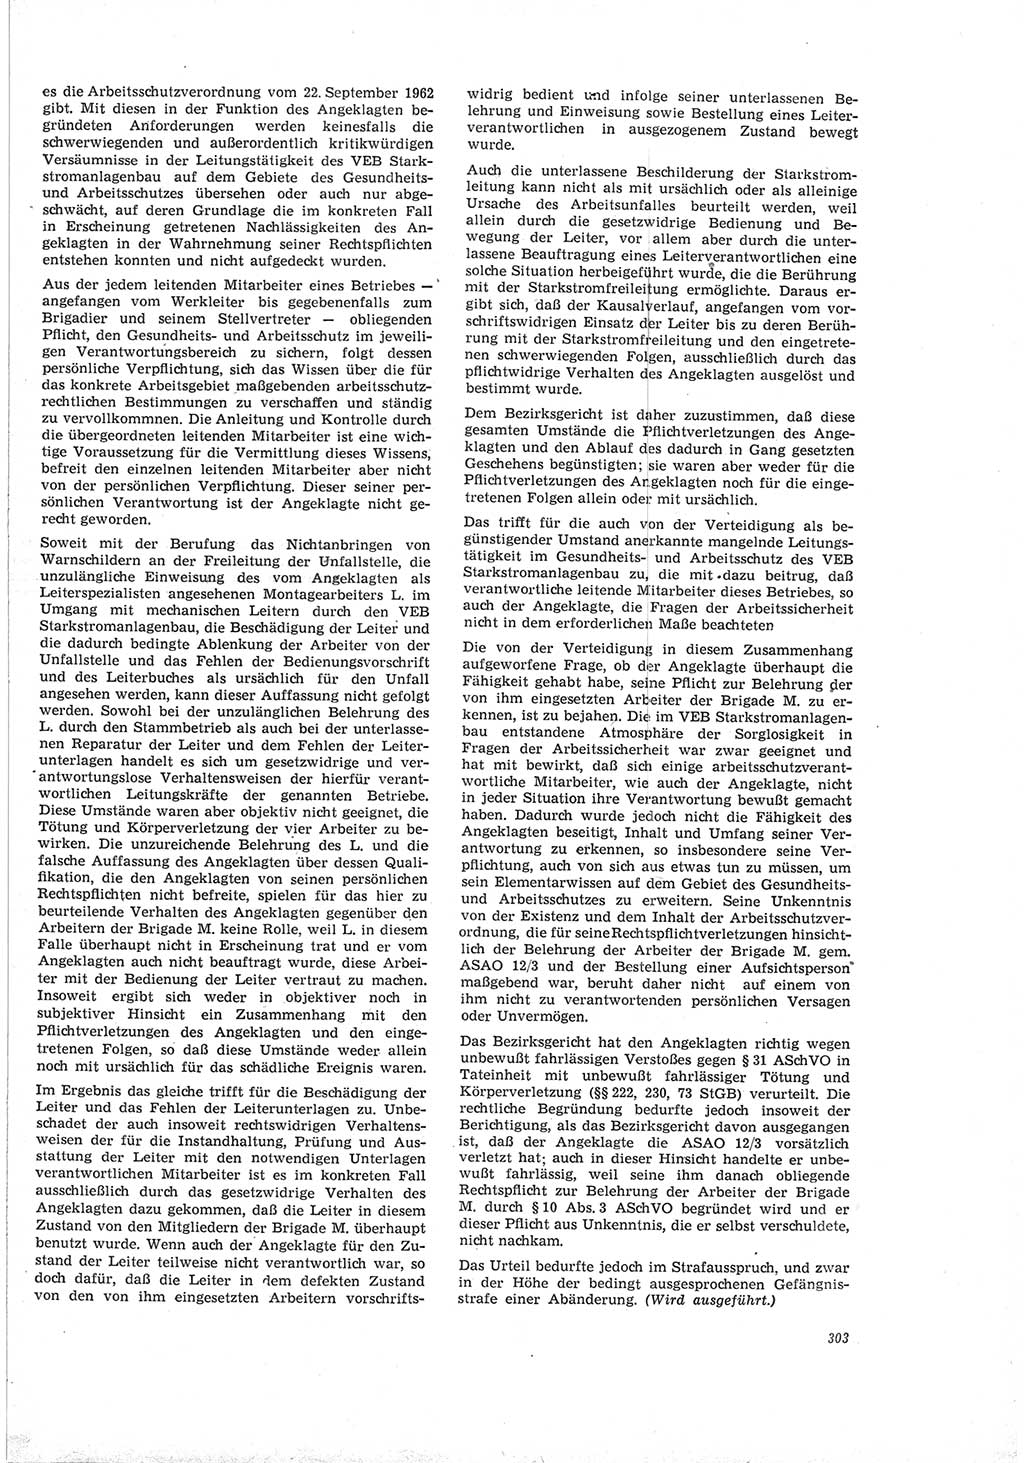 Neue Justiz (NJ), Zeitschrift für Recht und Rechtswissenschaft [Deutsche Demokratische Republik (DDR)], 19. Jahrgang 1965, Seite 303 (NJ DDR 1965, S. 303)